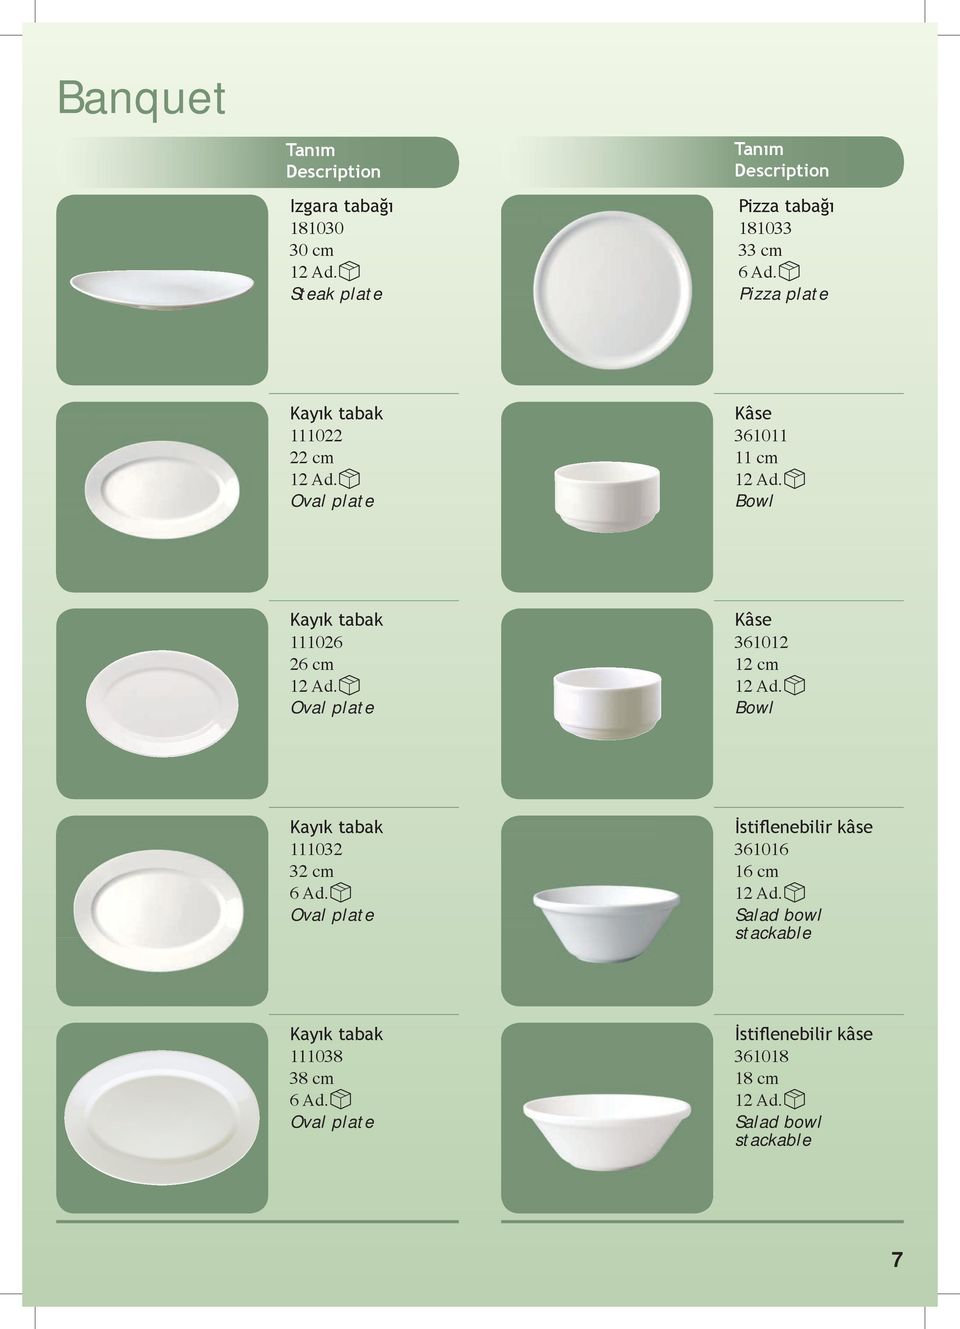 361012 12 cm Bowl Kayık tabak 111032 32 cm Oval plate İstiflenebilir kâse 361016 16 cm Salad